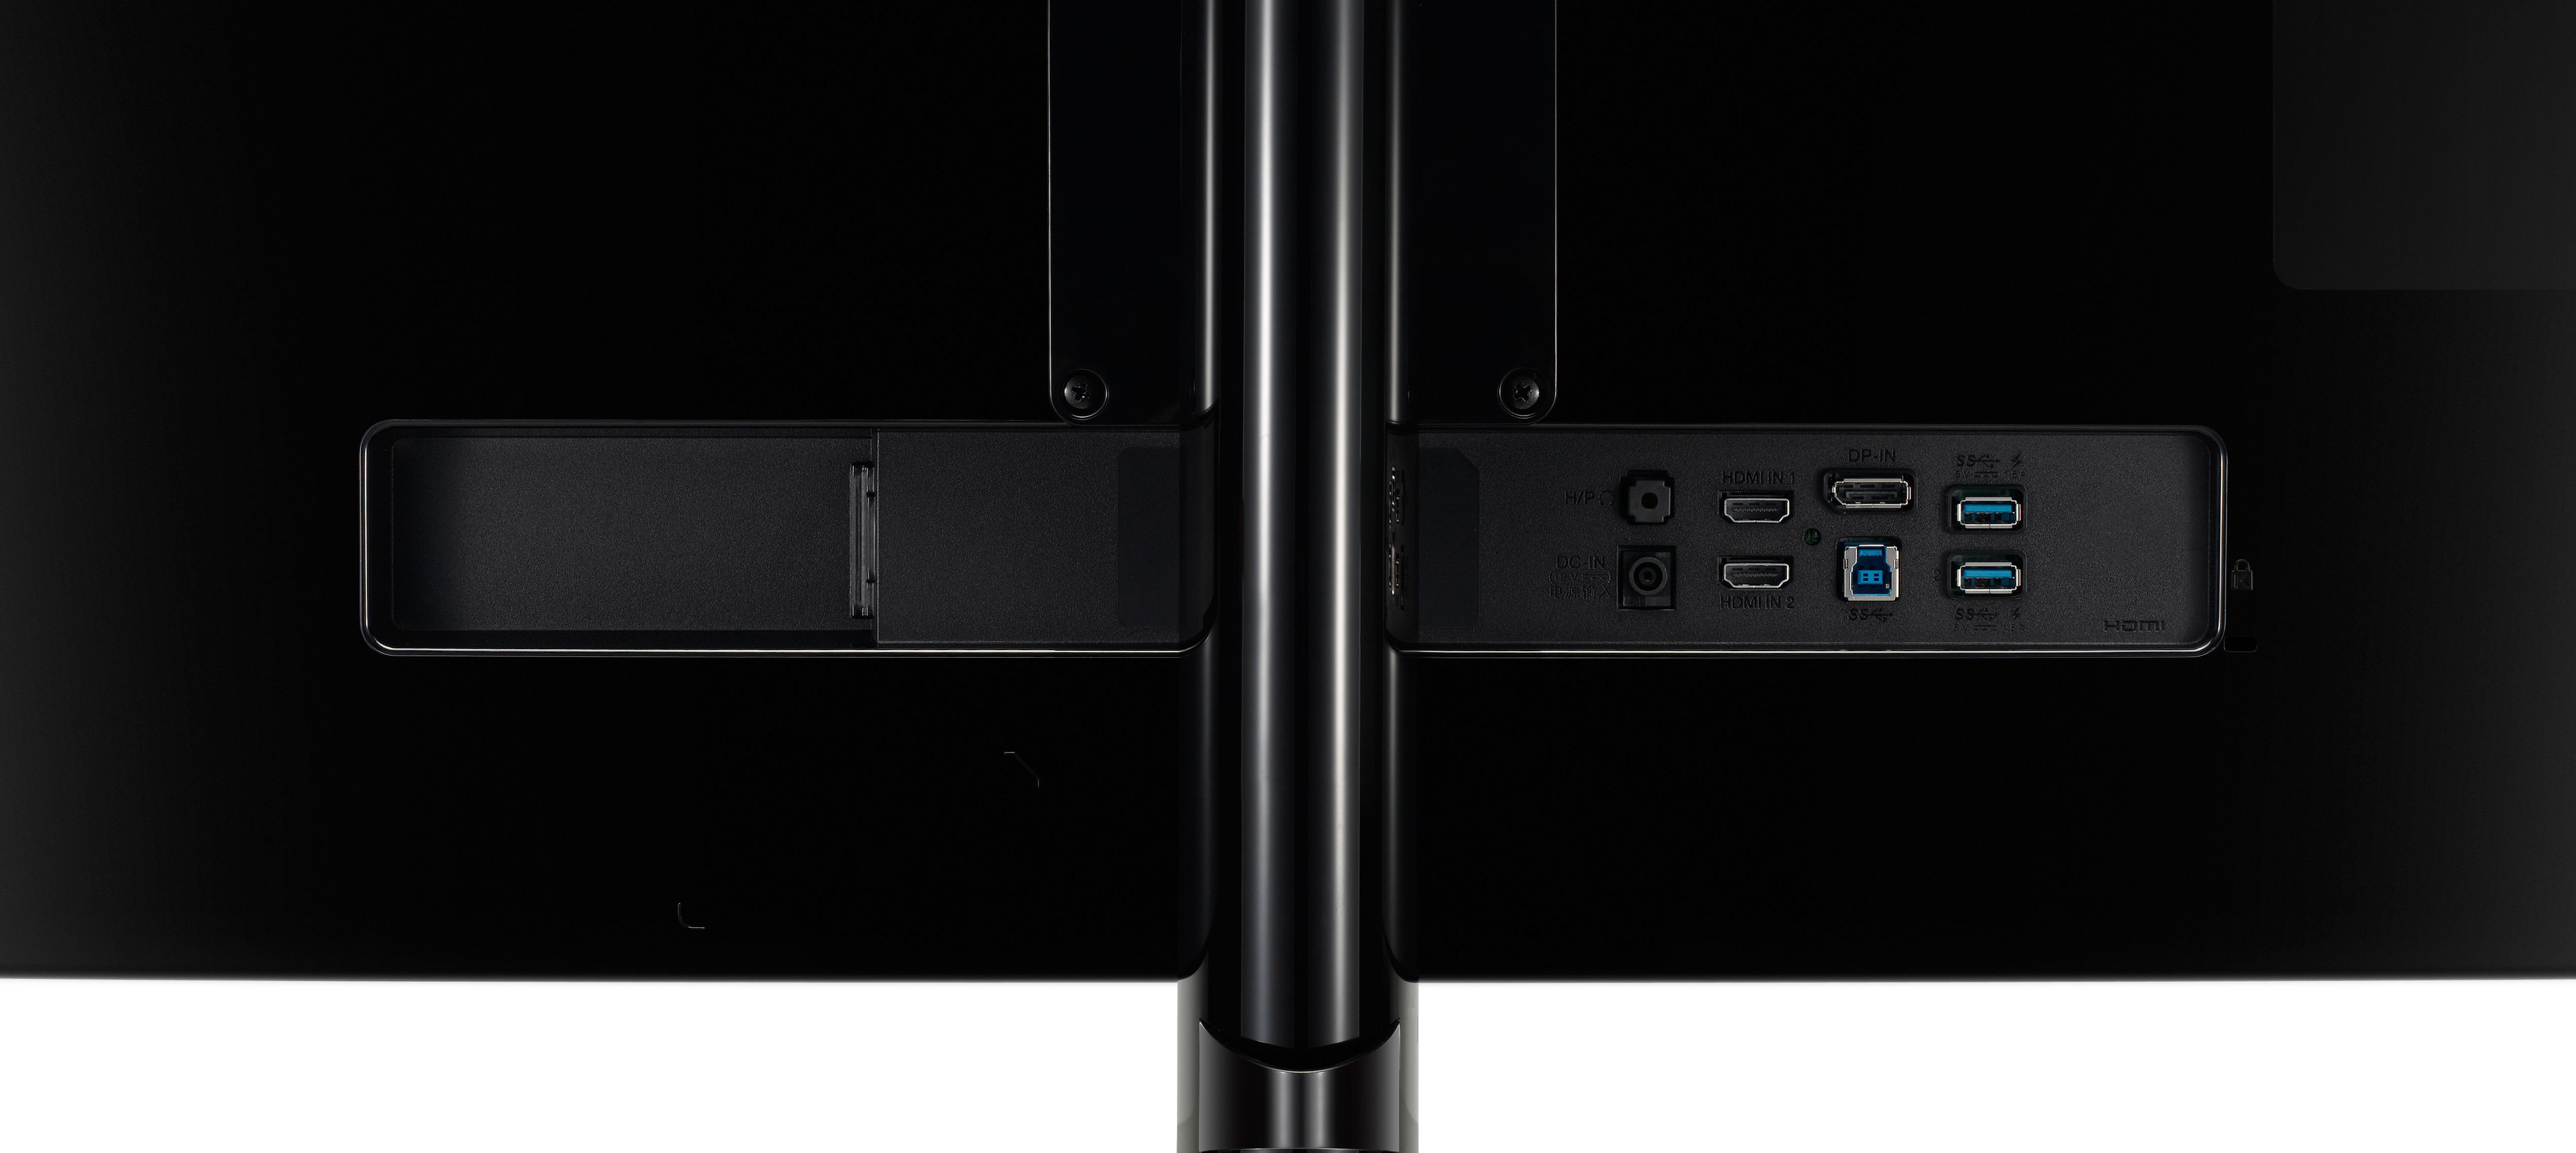 LG 34" UltraWide IPS LED Monitor (34UM88C-P Black) - image 2 of 8